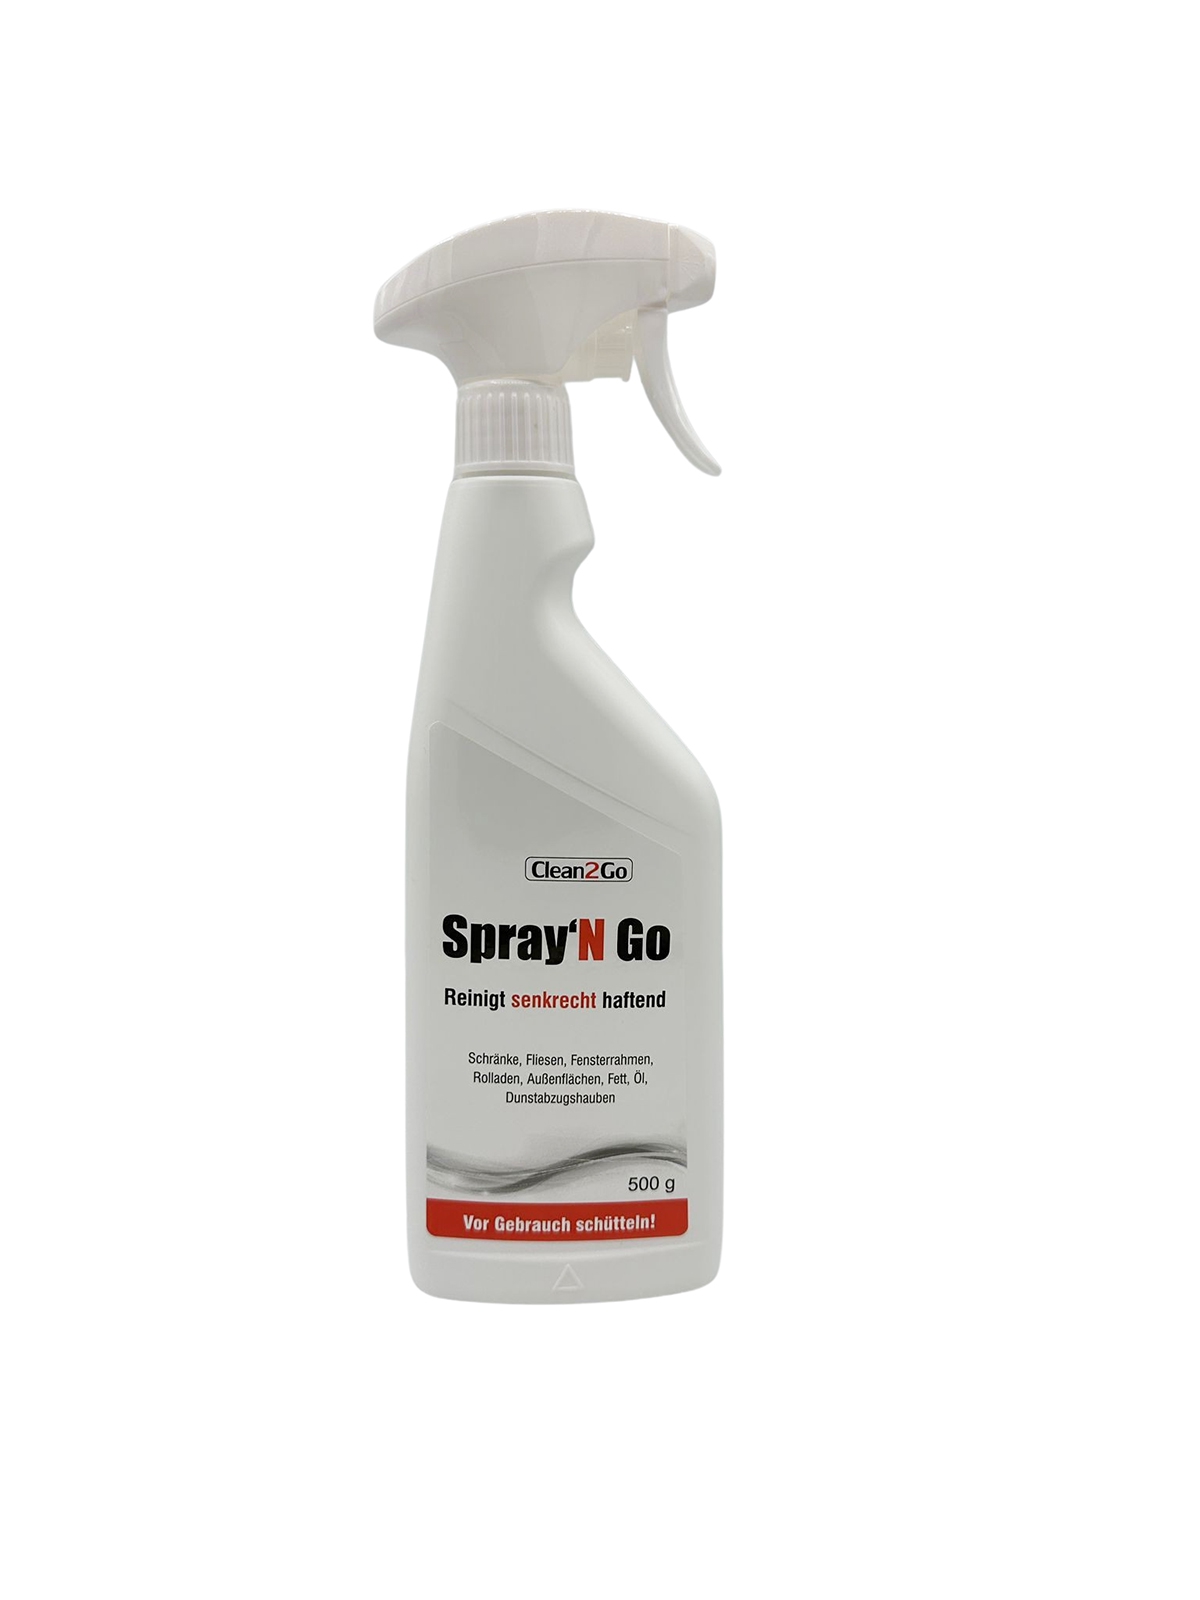 Spray'N Go - Adhesion Spray Cleaner, 500 g Aerosol